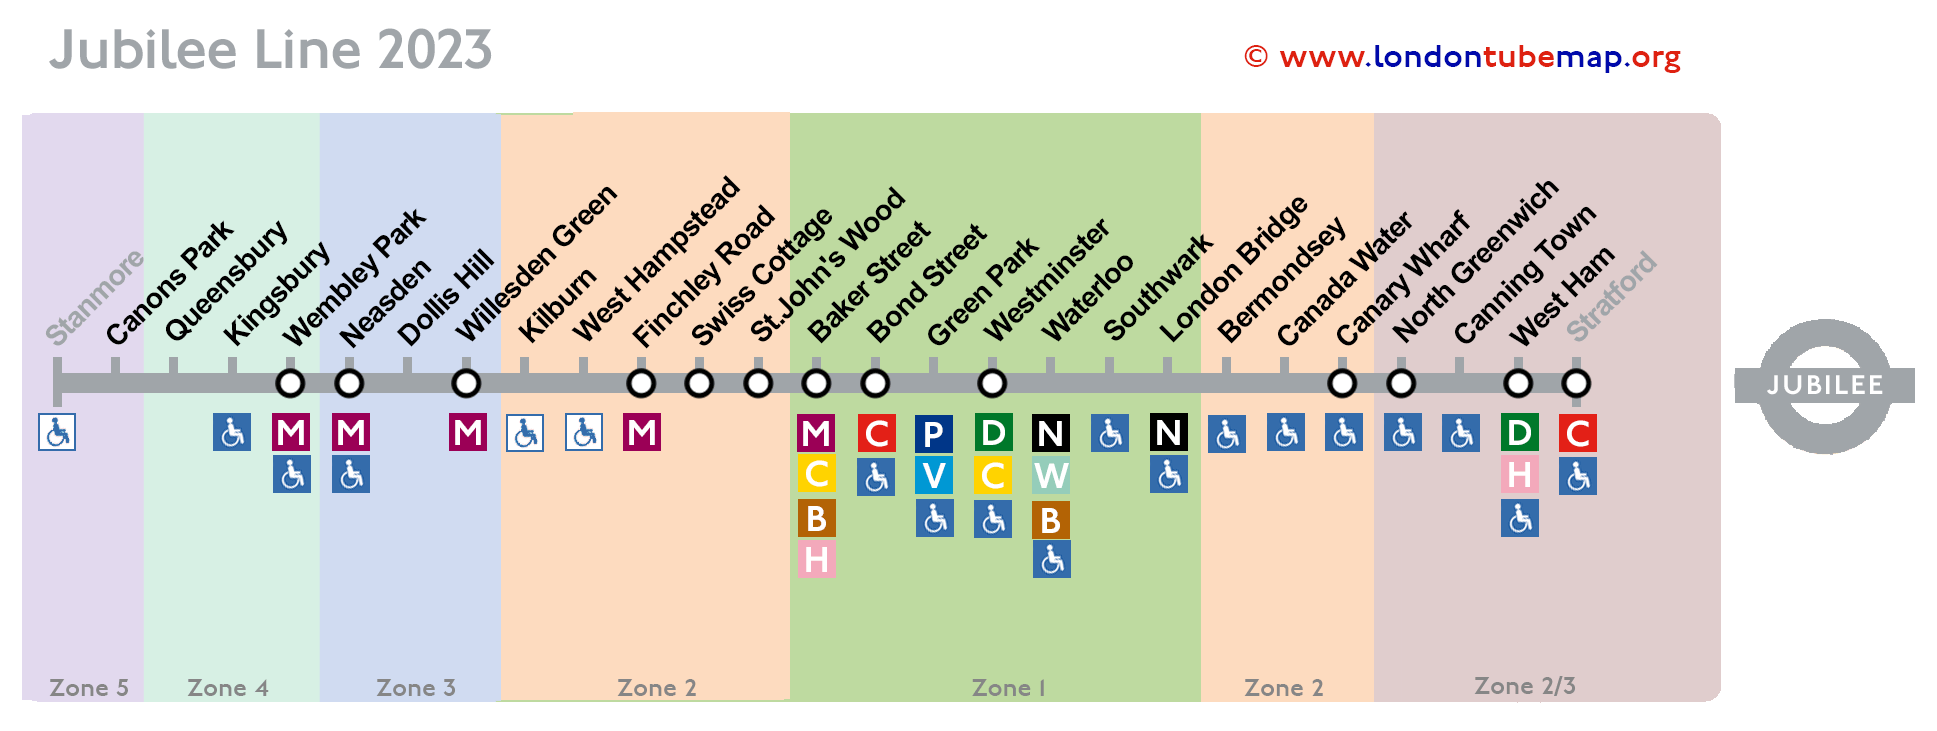 Jubilee line map 2023